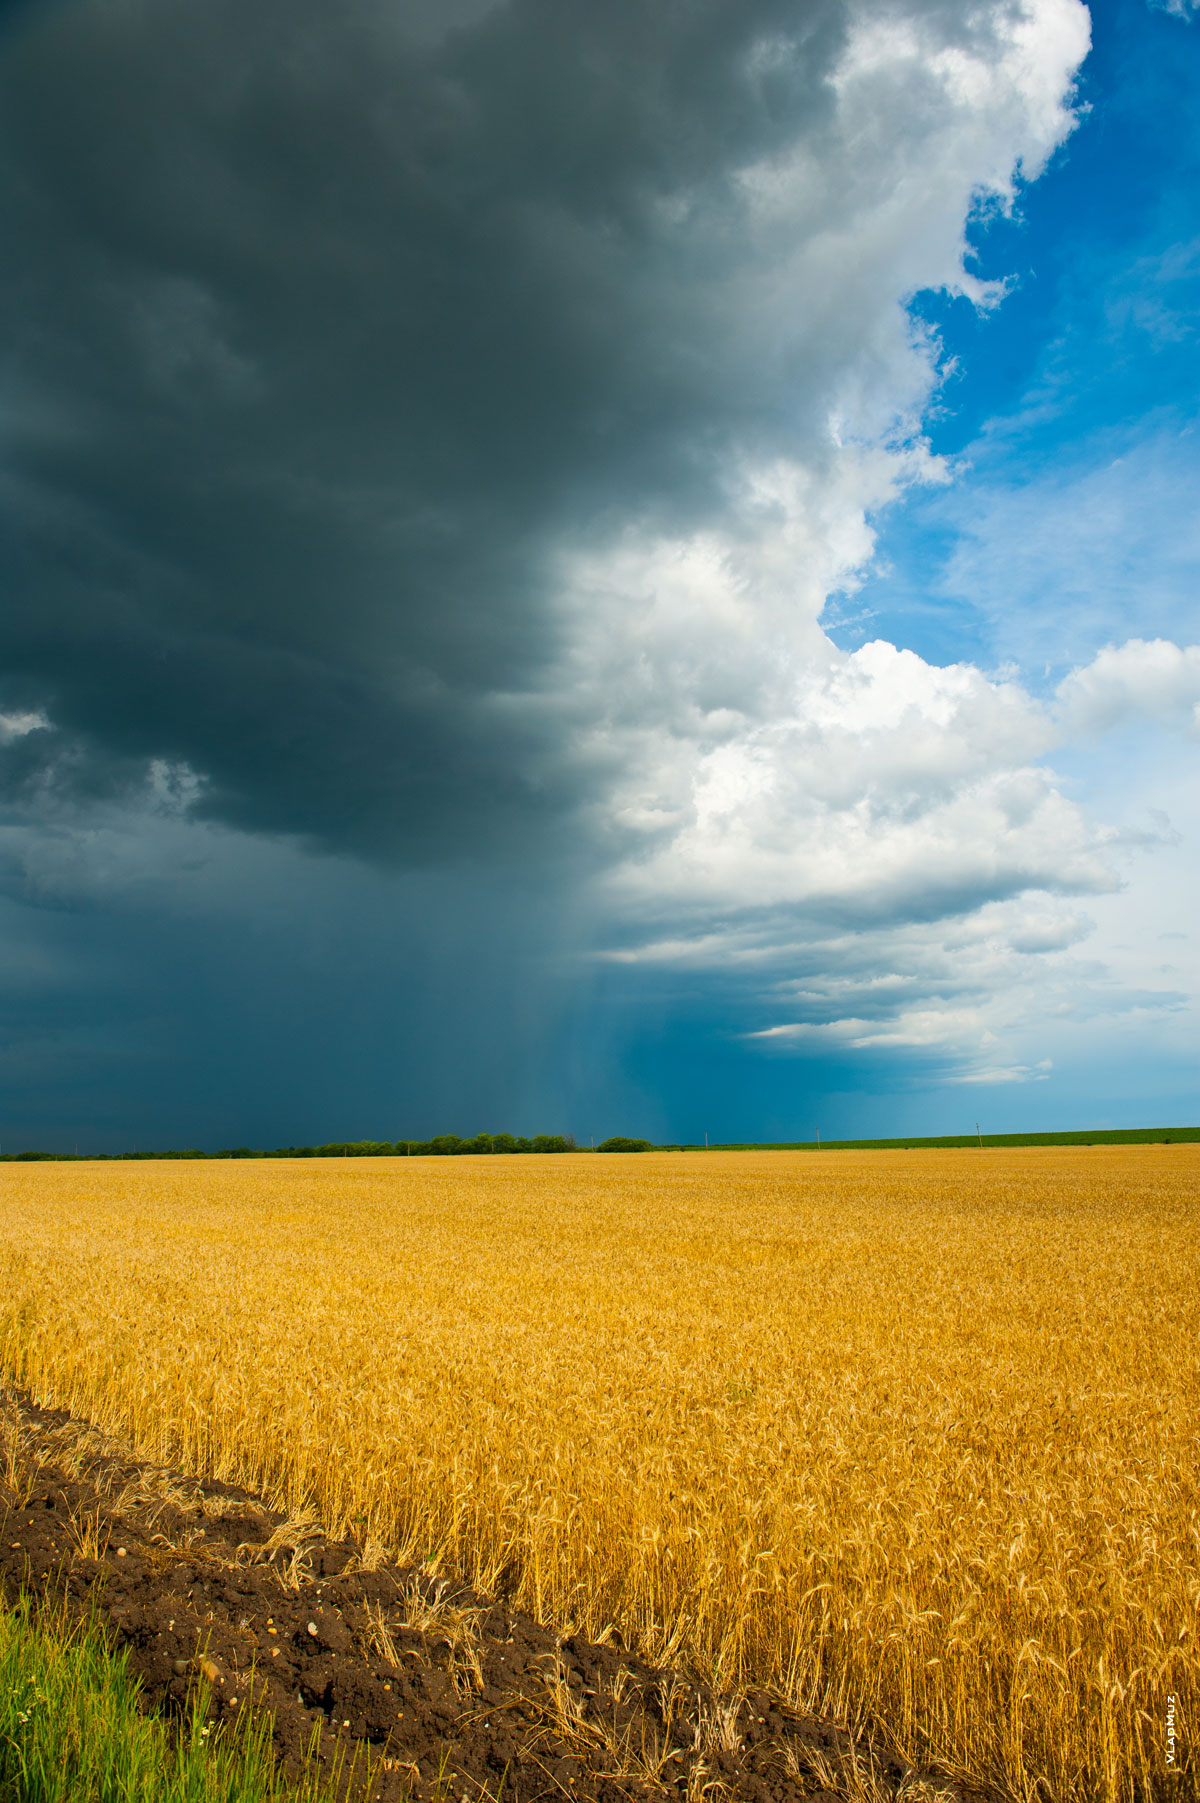 Фотопейзаж: небо и пшеничное поле